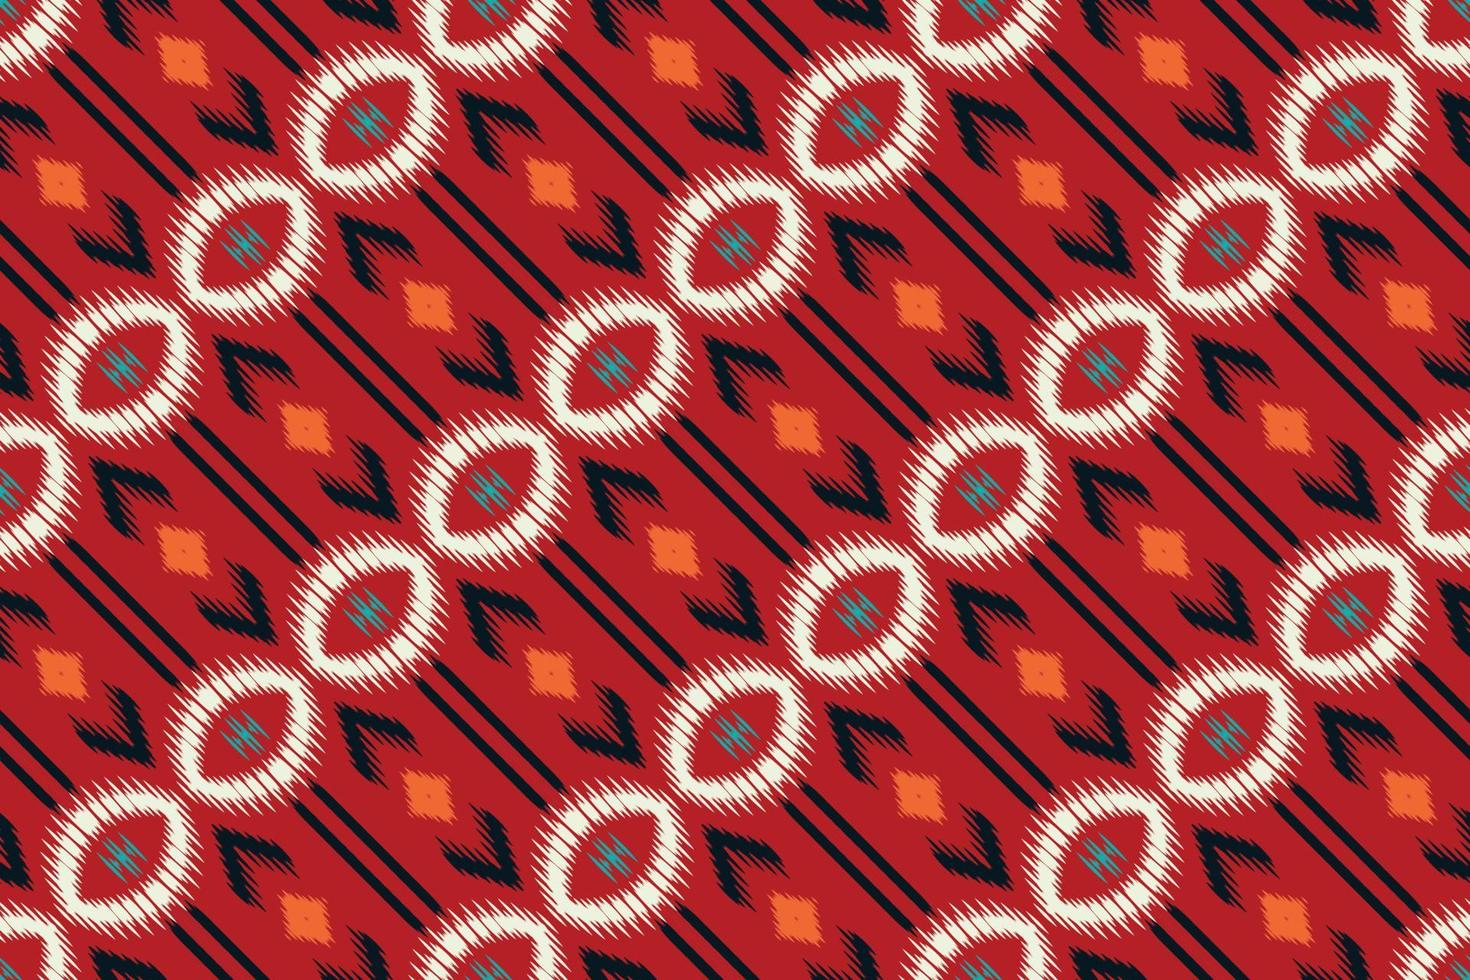 Ikat entwirft Stammes-aztekisches nahtloses Muster. ethnische geometrische ikkat batik digitaler vektor textildesign für drucke stoff saree mughal pinsel symbol schwaden textur kurti kurtis kurtas